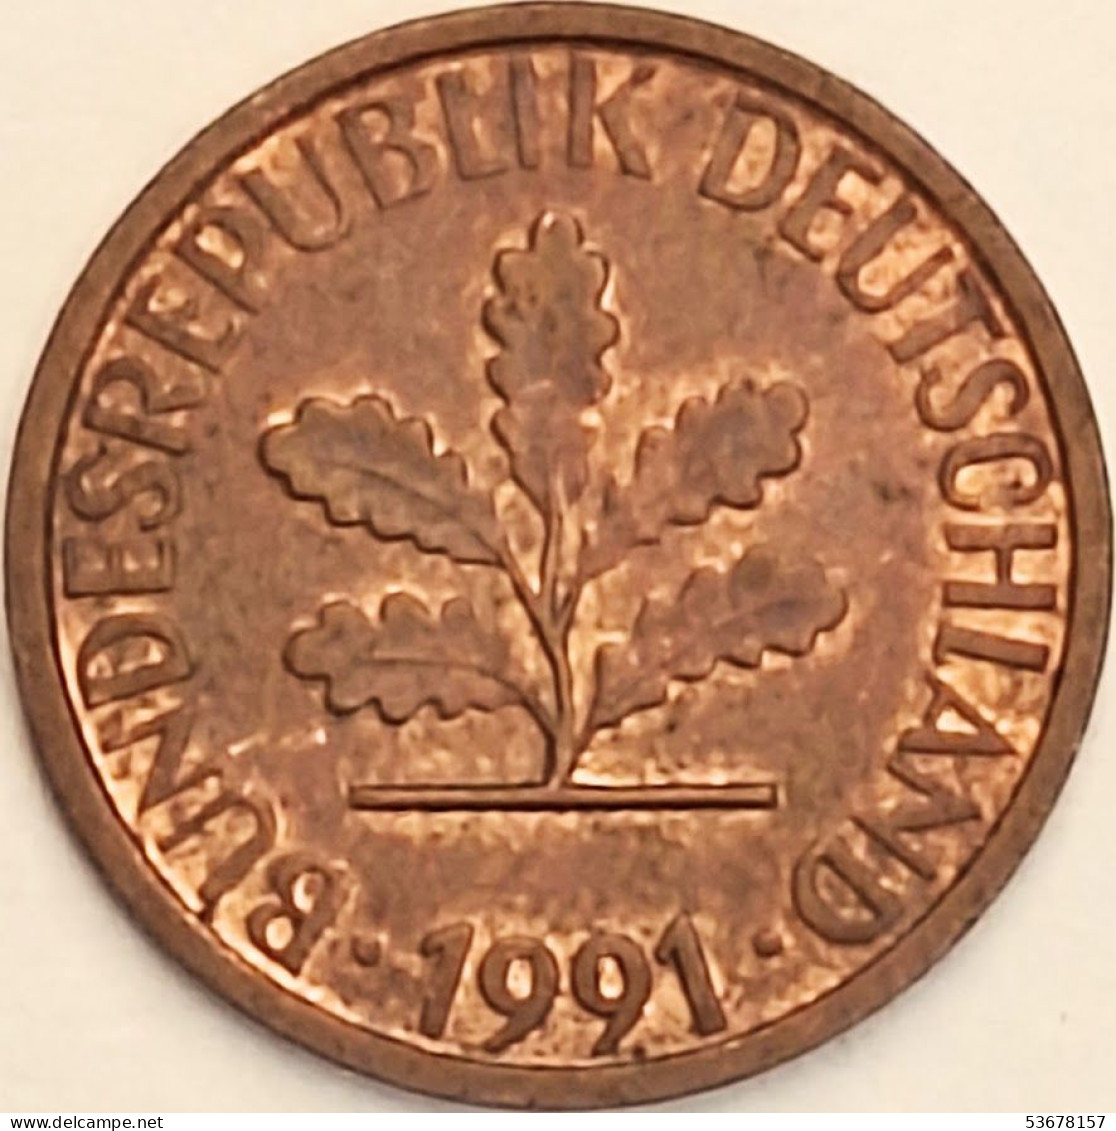 Germany Federal Republic - Pfennig 1991 A, KM# 105 (#4507) - 1 Pfennig